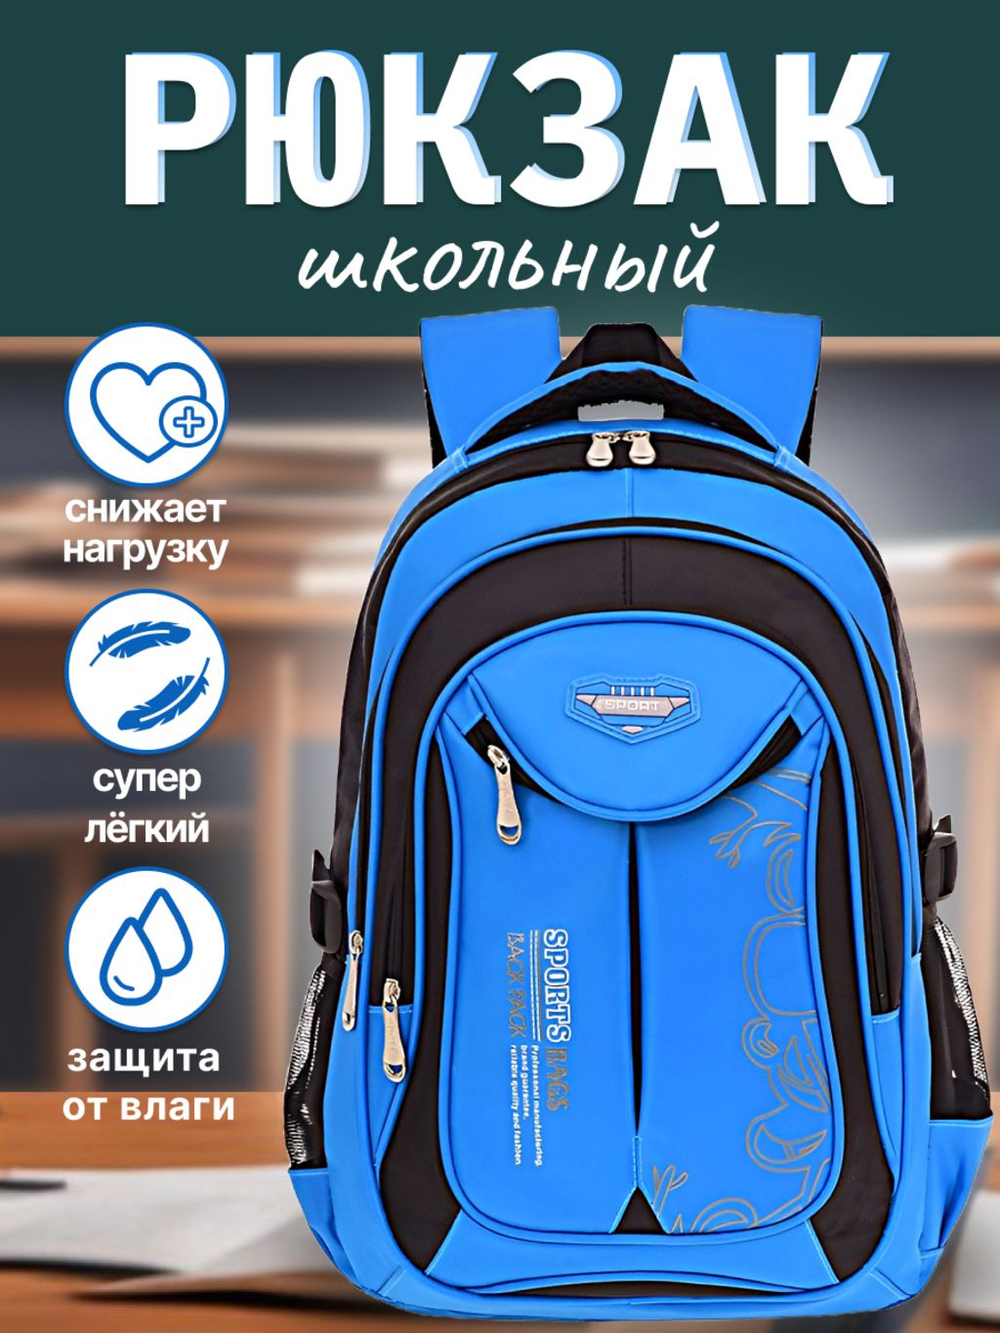 Детский рюкзак 3 отделения 45x30x20см (синий)